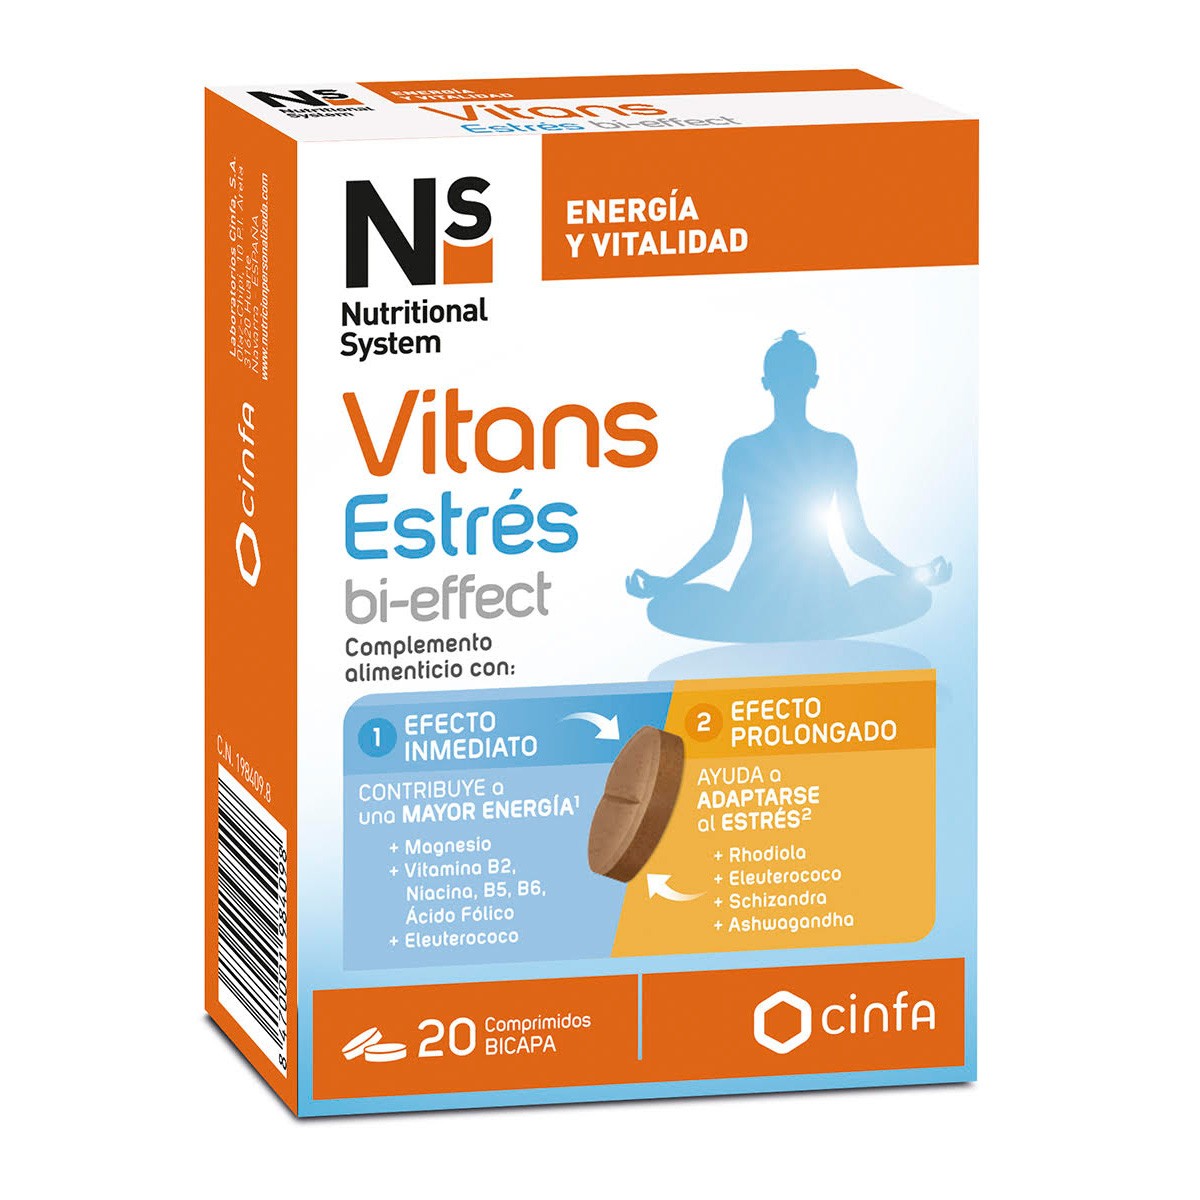 Imagen de N+S Vitans estres bi-effect 20 comprimidos
